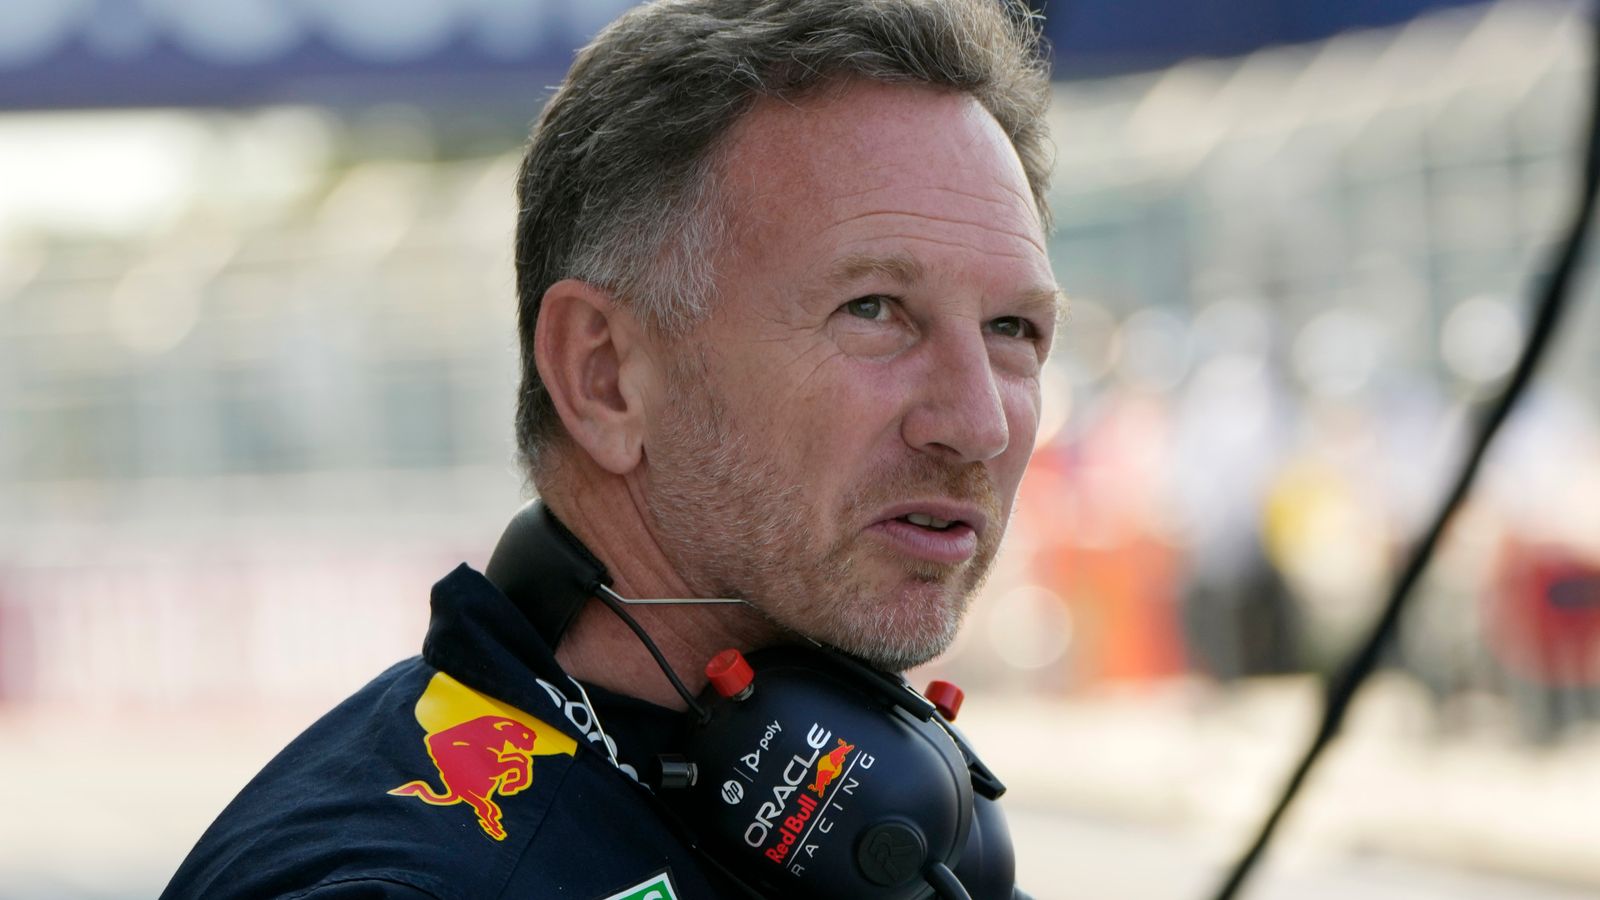 كريستيان هورنر: مدير فريق Red Bull F1 يتحدث علنًا لأول مرة بعد مزاعم بسوء السلوك |  أخبار الفورمولا 1